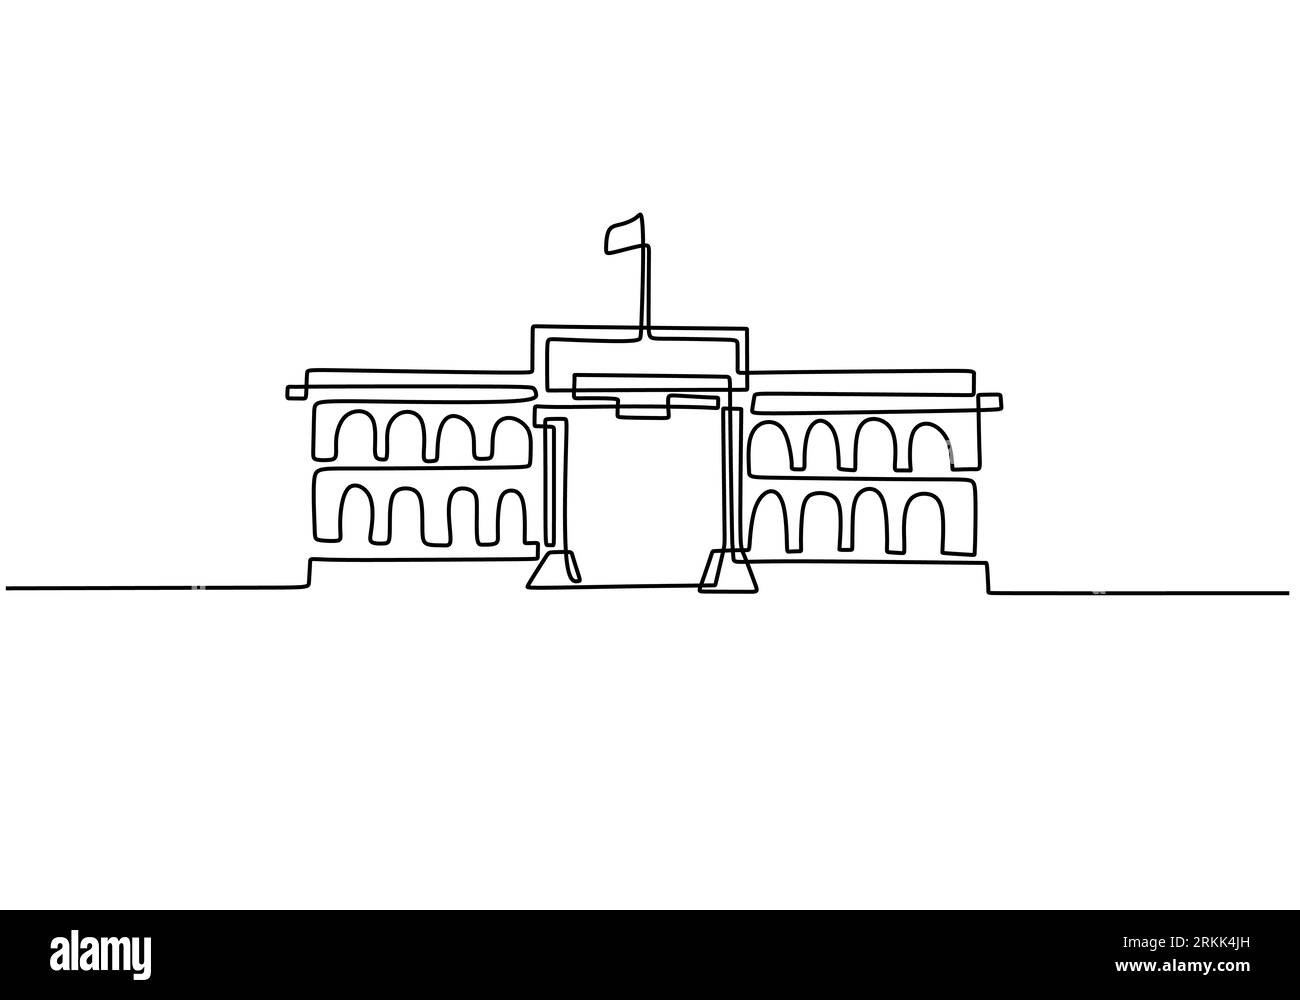 Edificio classico con colonne in continuo stile disegno a una linea. Architettura tipica per alloggi governativi, tribunali, università o musei. Illustrazione Vettoriale